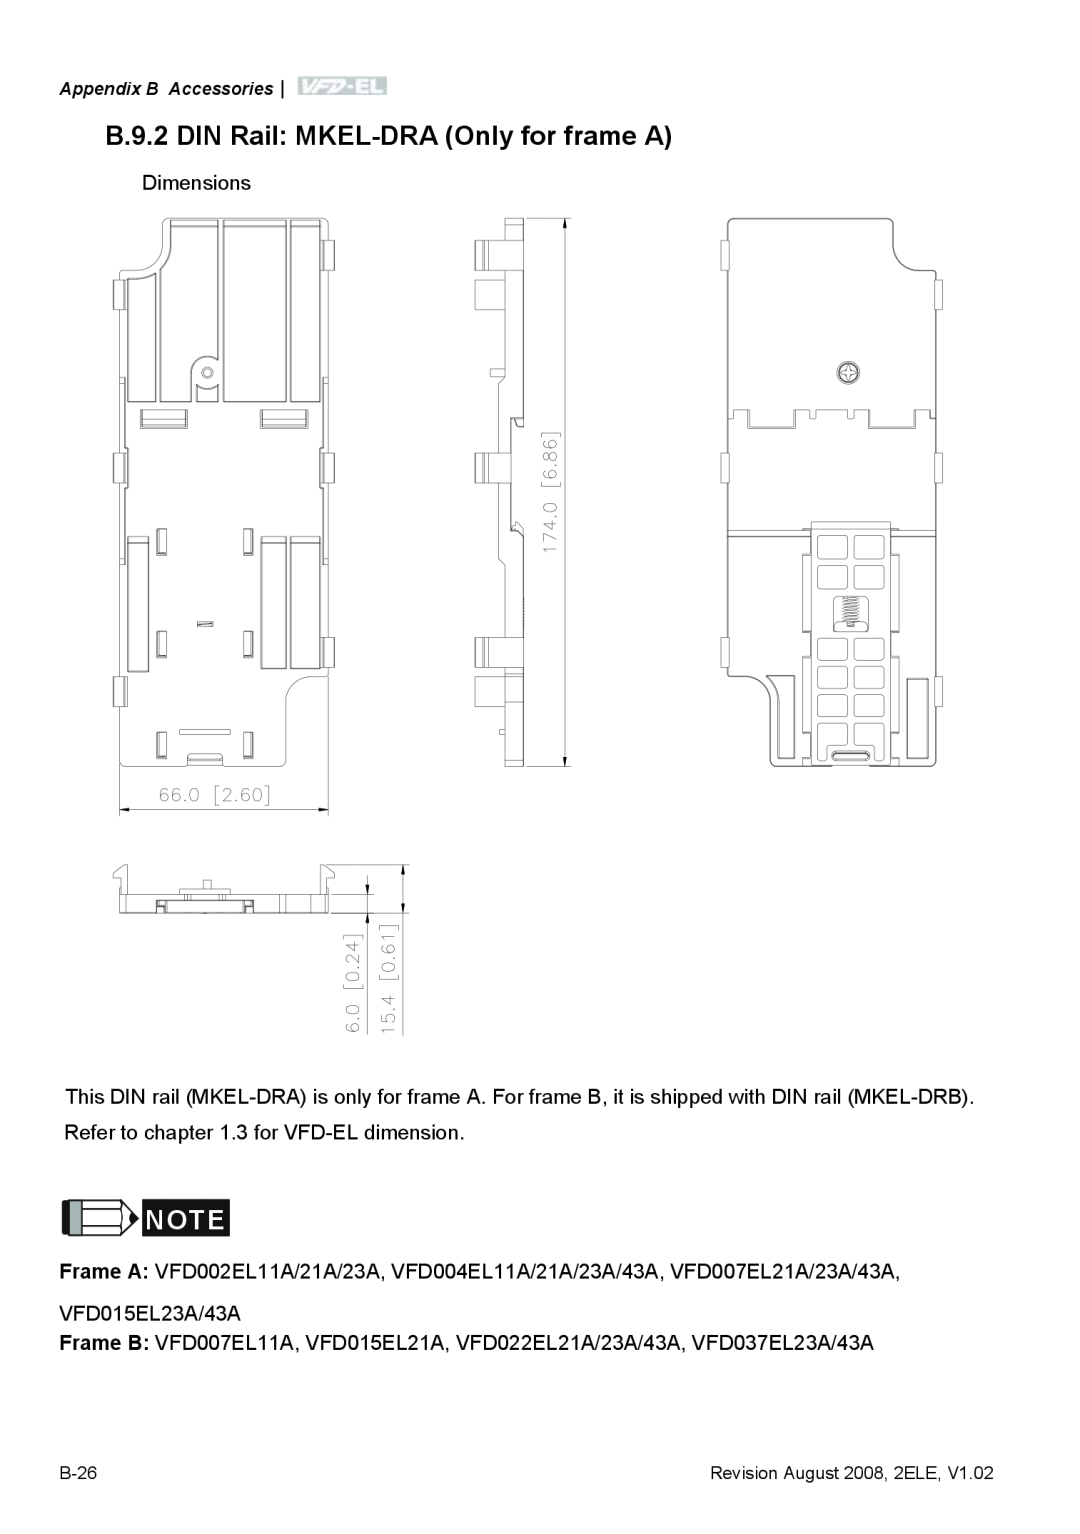 Delta Electronics VFD-EL B.9.2 DIN Rail MKEL-DRA Only for frame A, Dimensions, VFD015EL23A/43A, Appendix B Accessories 